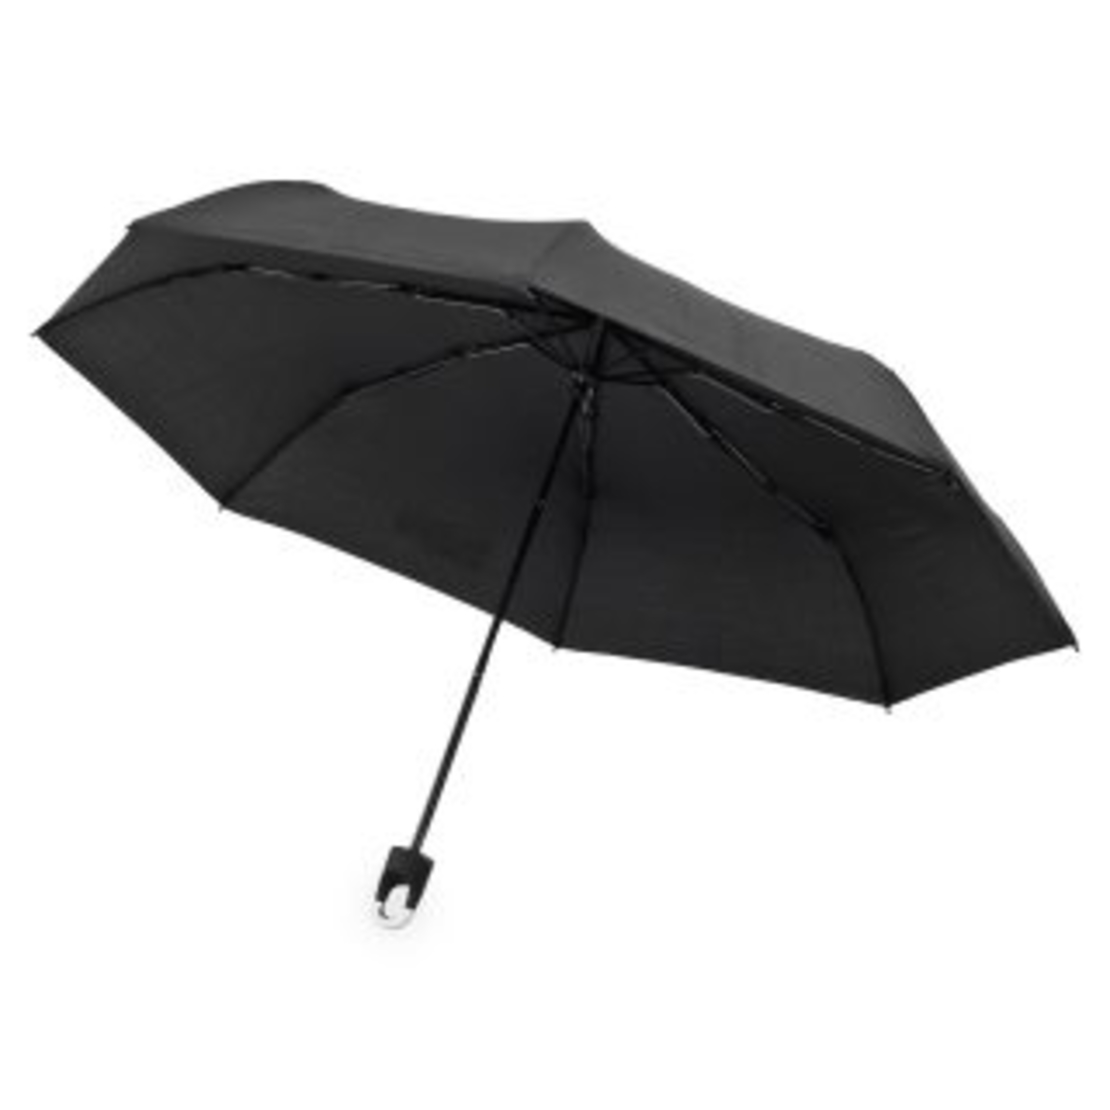 מטריה מתקפלת, “21 – פלטינג